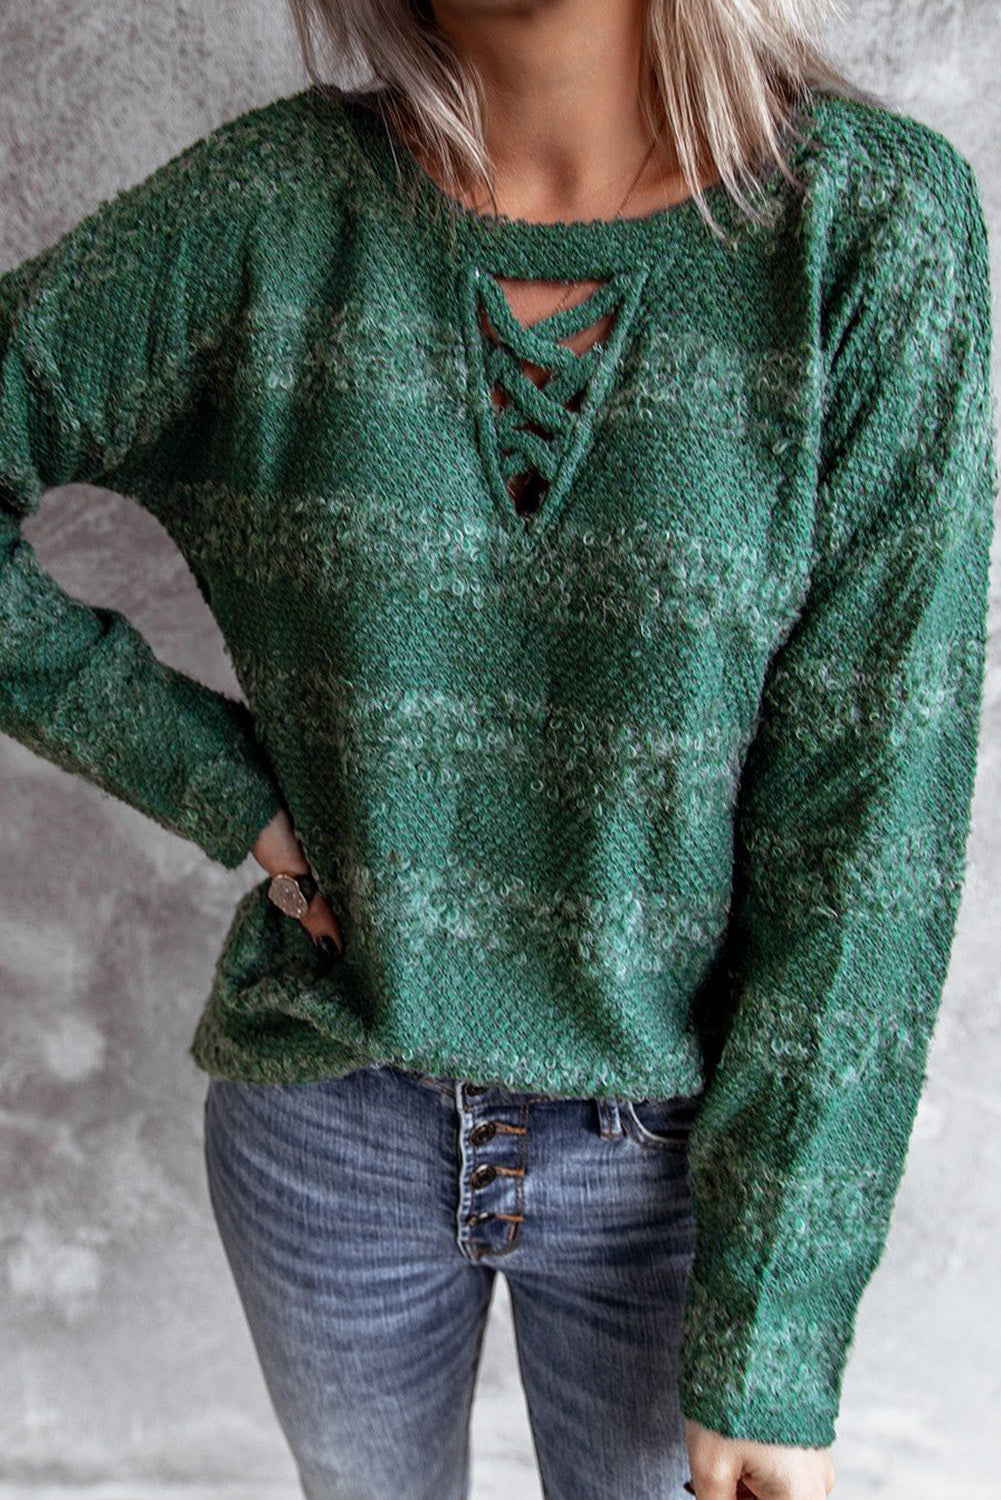 Maglione sfocato verde incrociato con buco della serratura